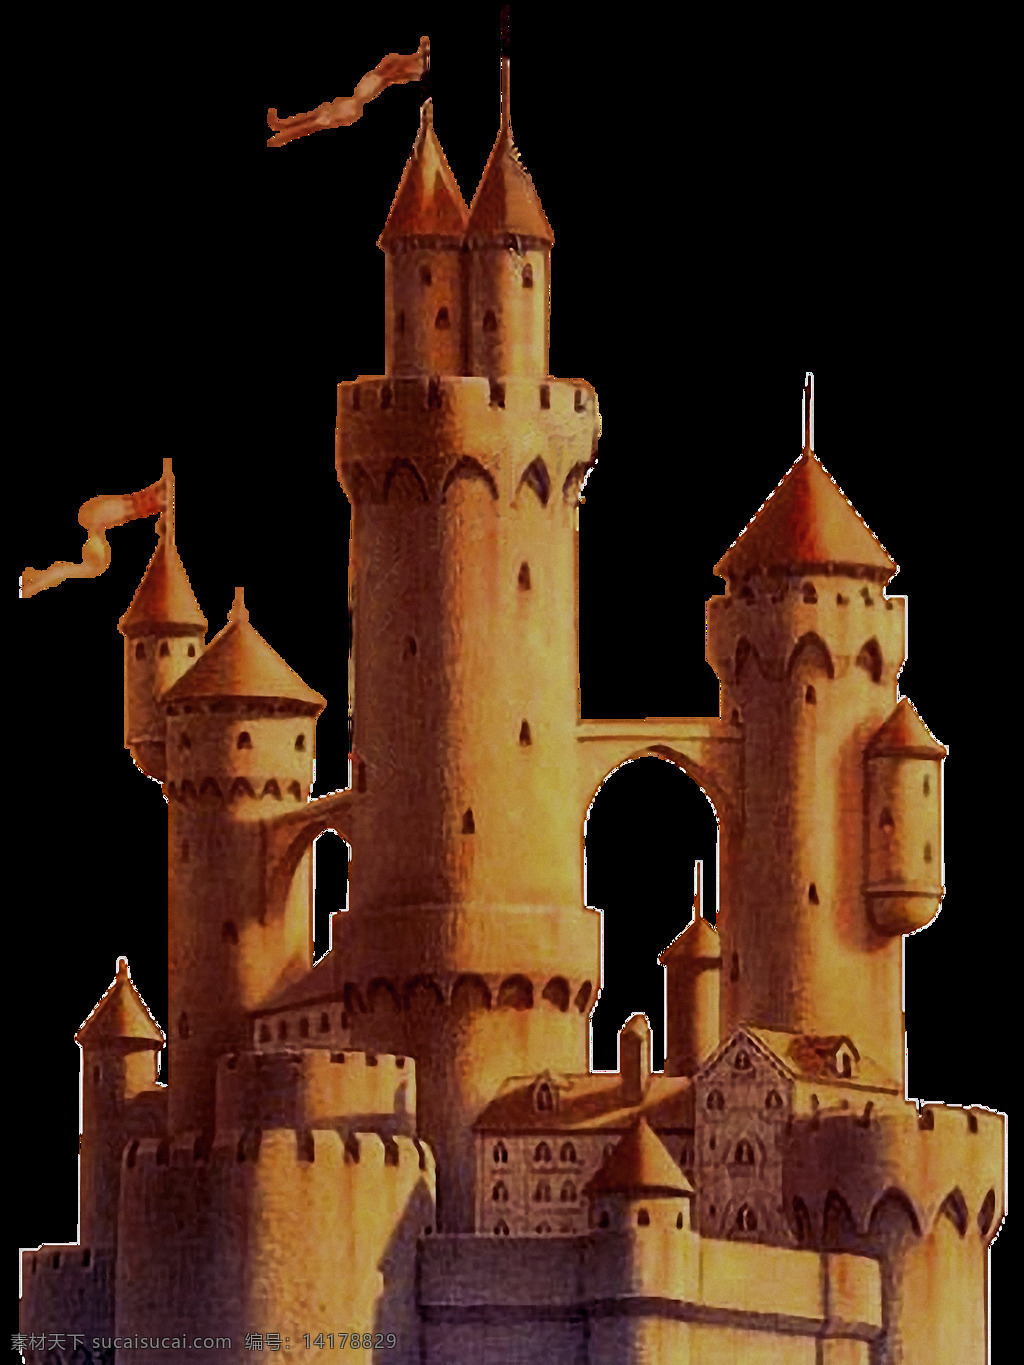 手绘 棕色 城堡 免 抠 透明 图 层 梦幻 童话 简 笔画 梦幻宫殿城堡 水晶城堡 冰雪城堡 世界 上 最美 童话城堡 城堡建筑 魔幻城堡 城堡素材 古代城堡